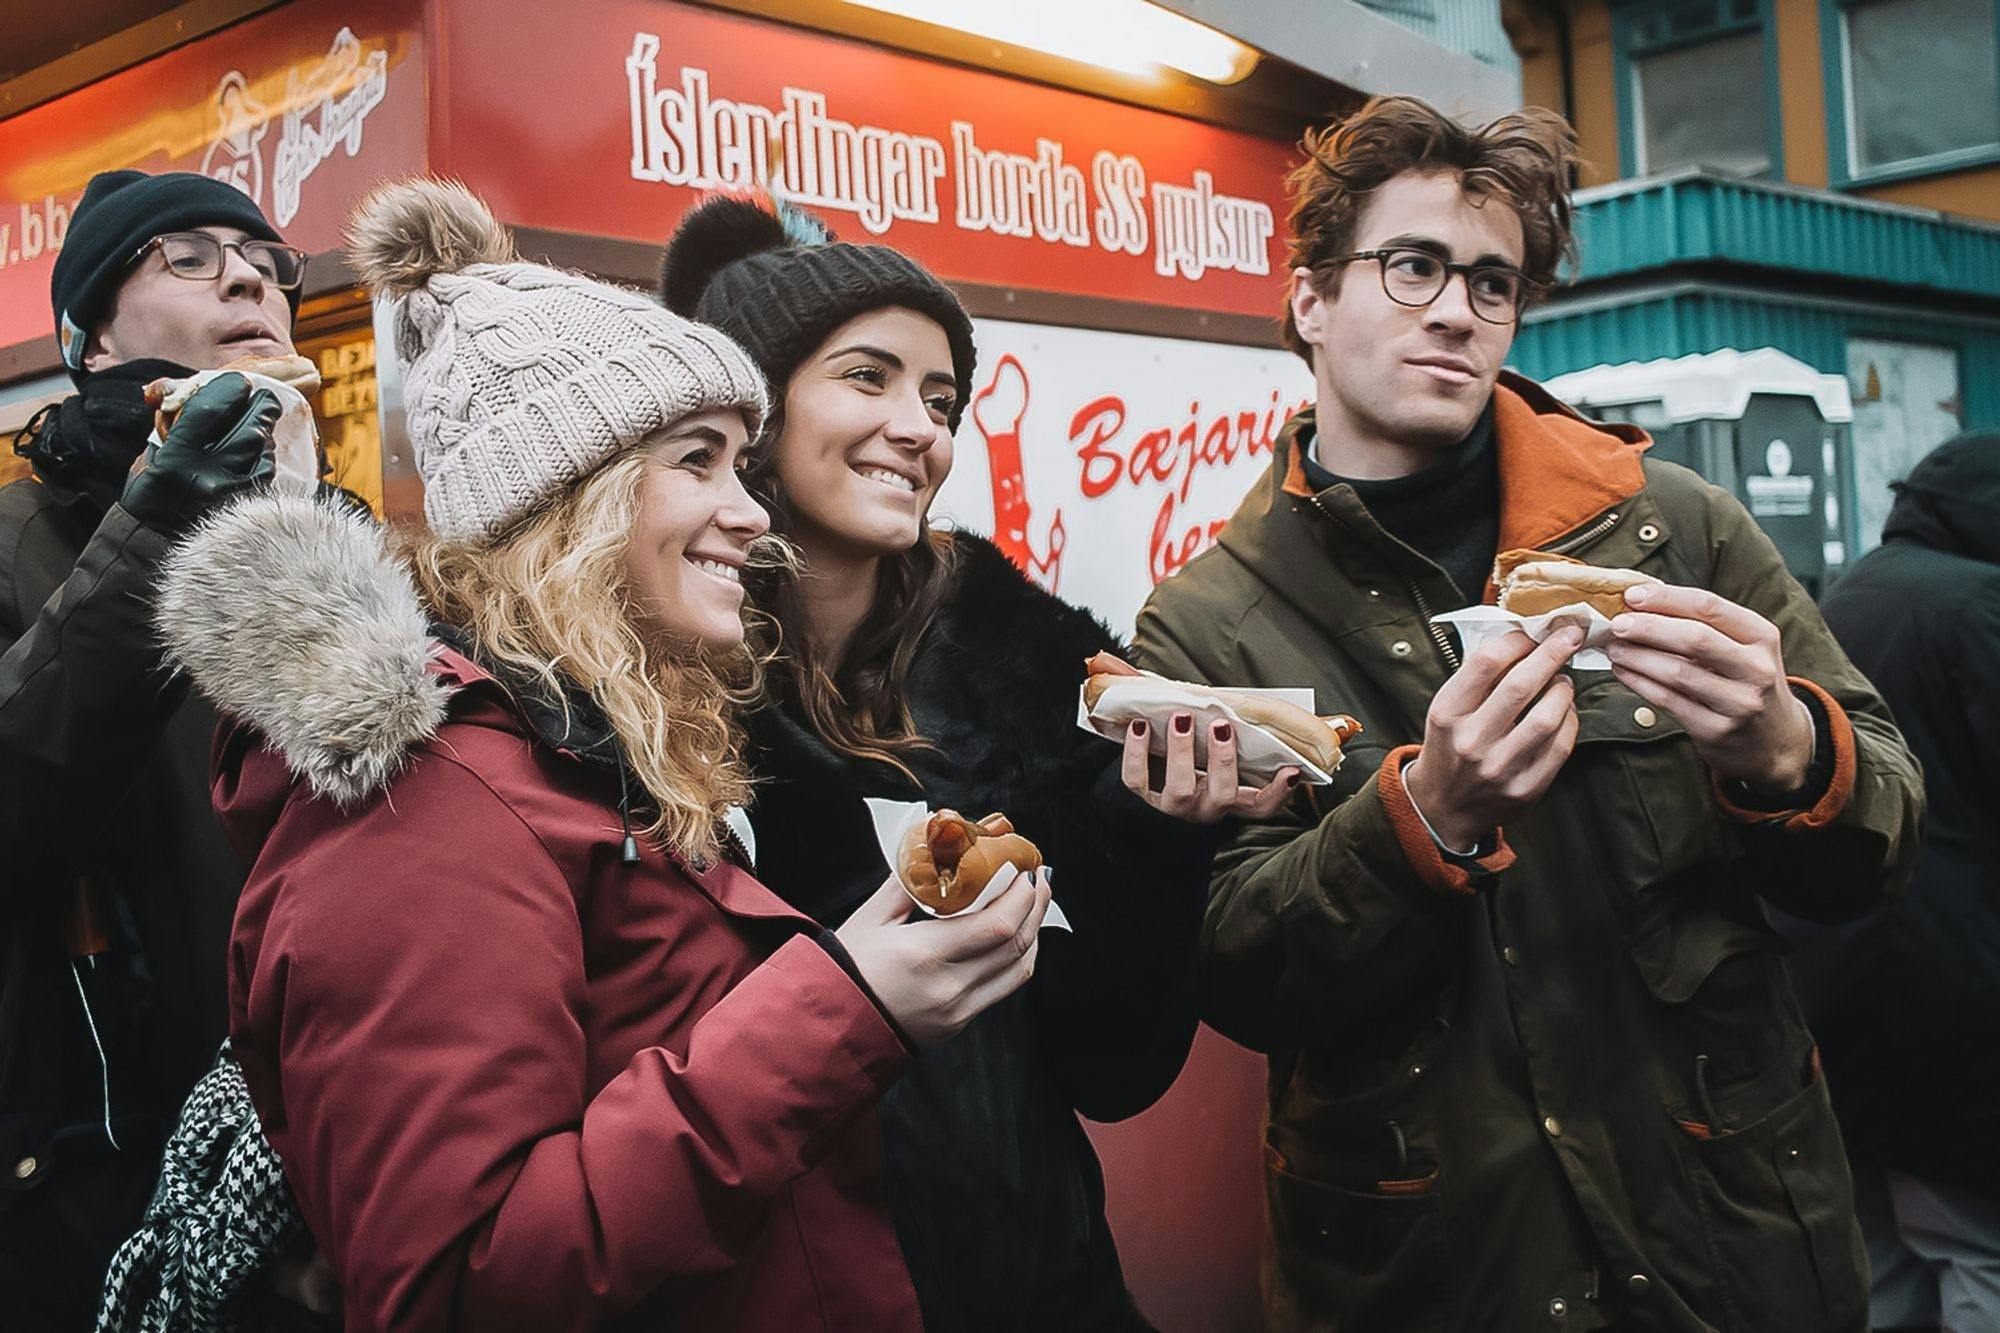 Hot Dog stand in Reykjavik